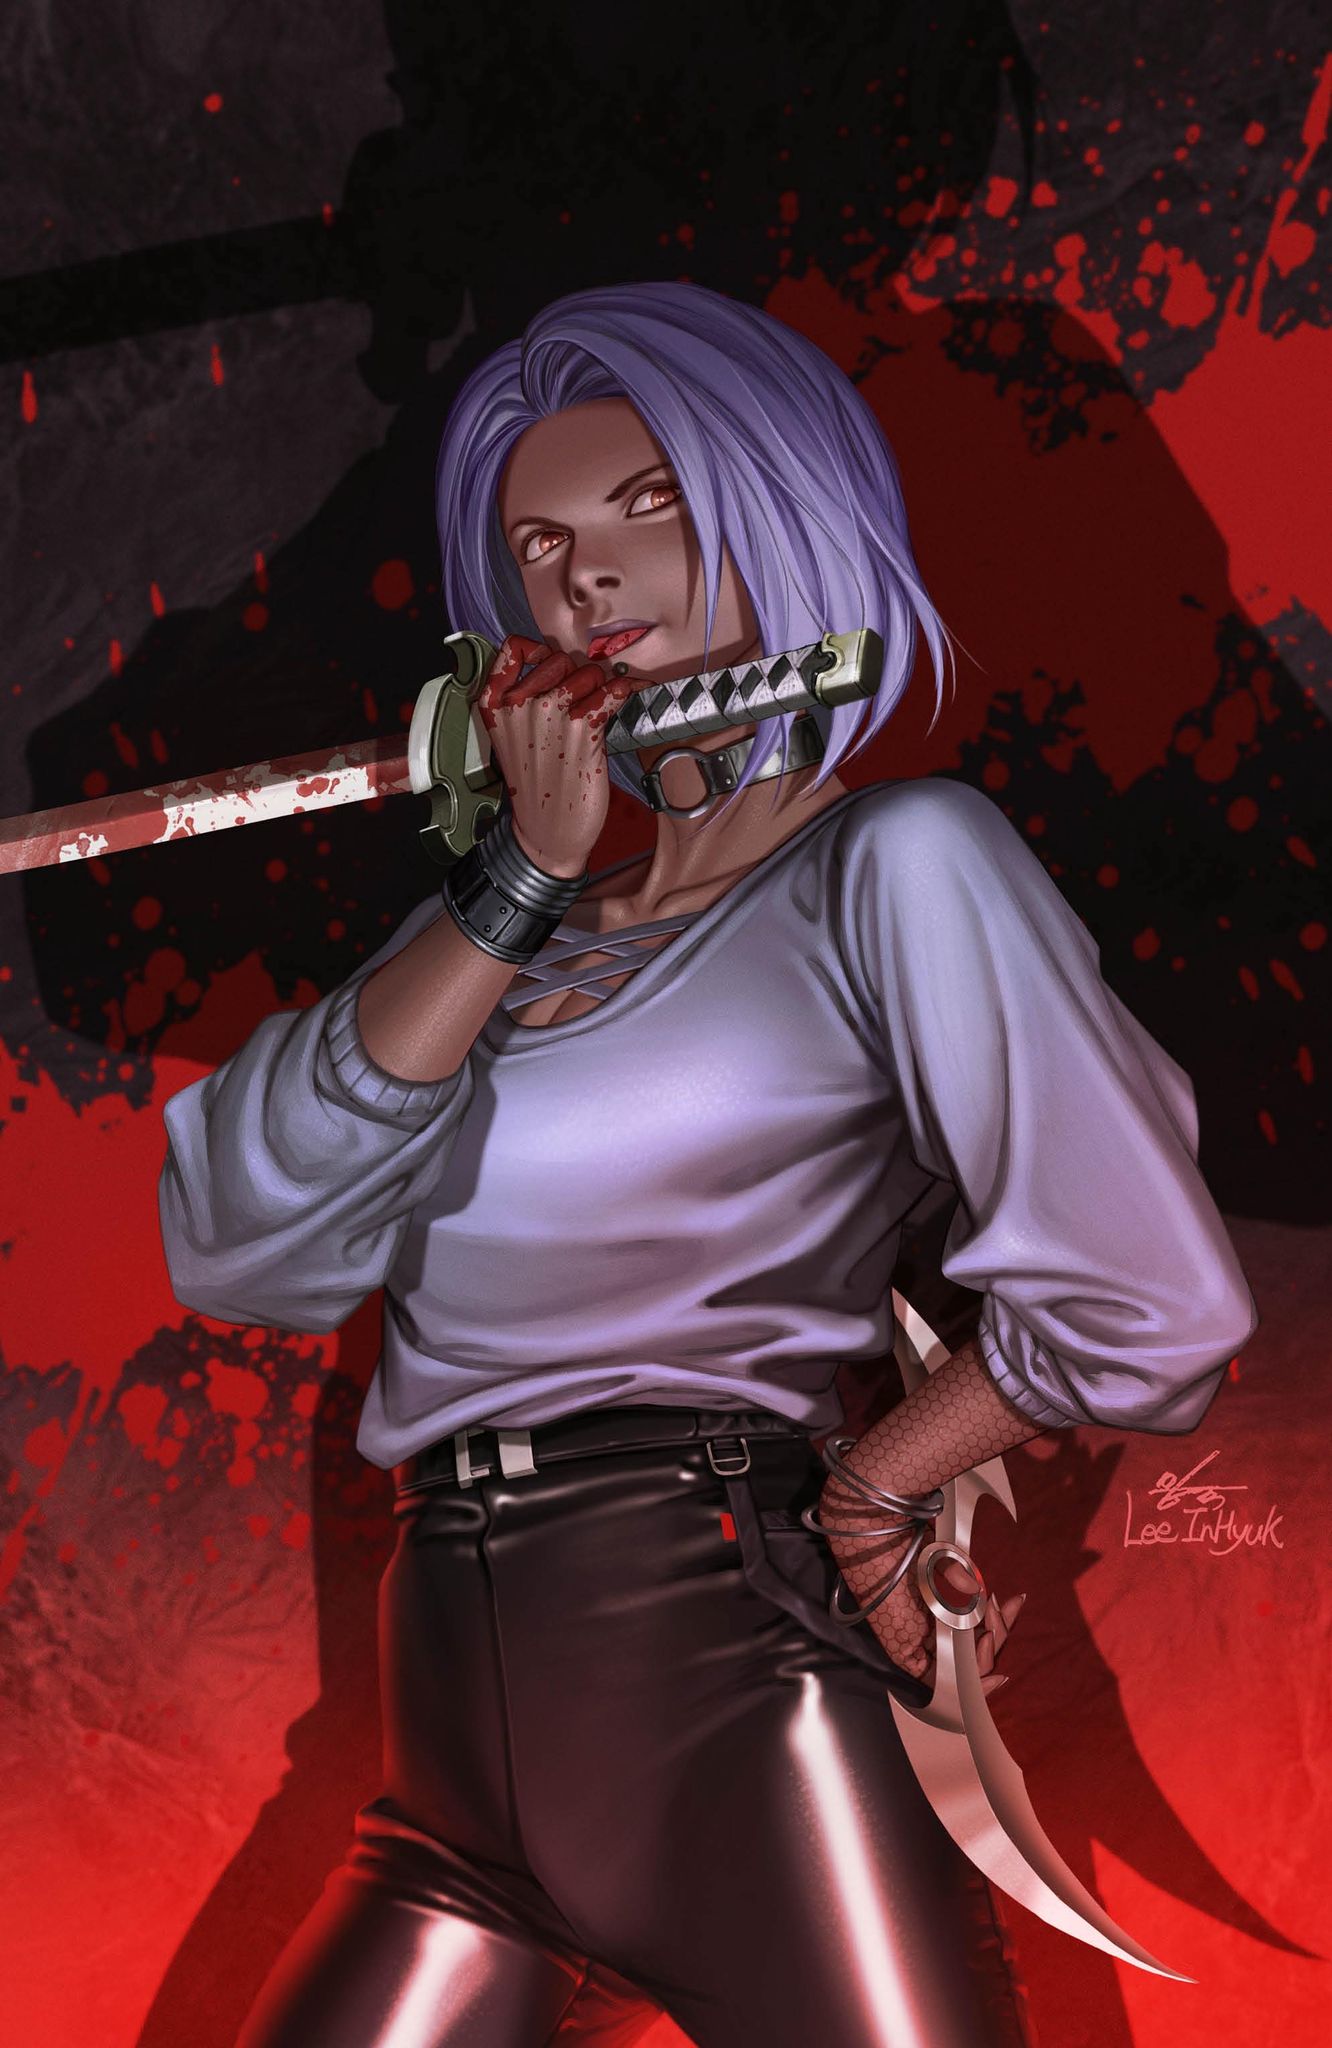 [2 PACK] BLOODLINE: DAUGHTER OF BLADE #1 INHYUK LEE (616) EXCLUSIVE VAR (02/15/2023)